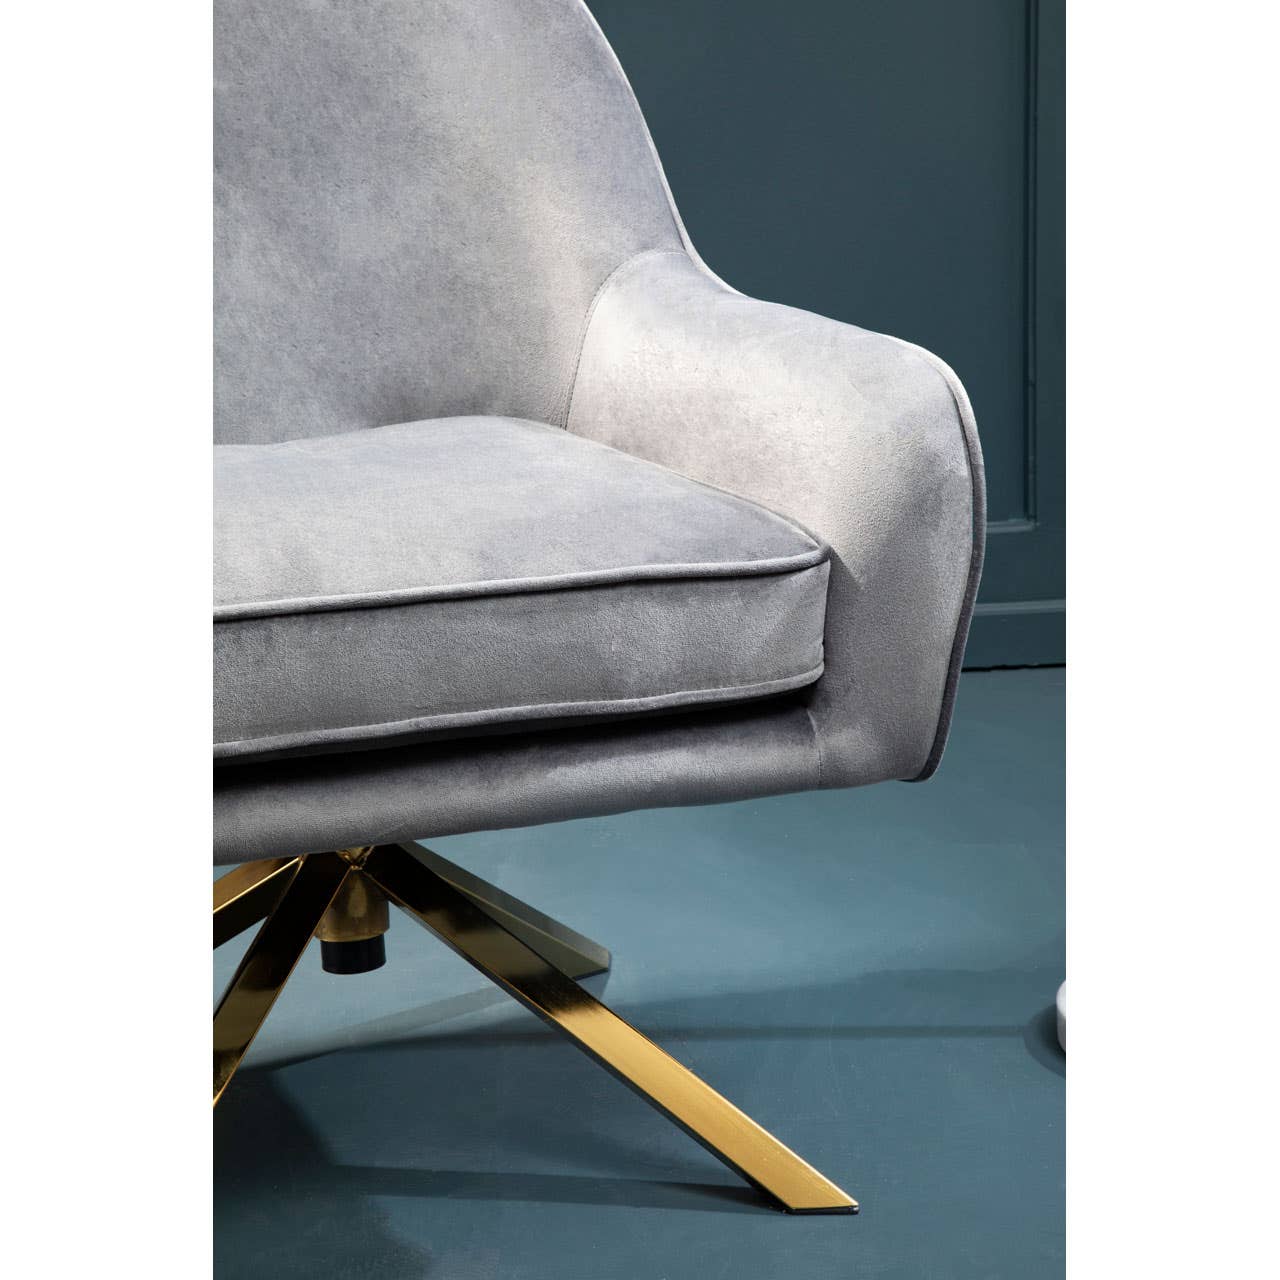 Noosa & Co. Living Avery Grey Velvet Chair House of Isabella UK